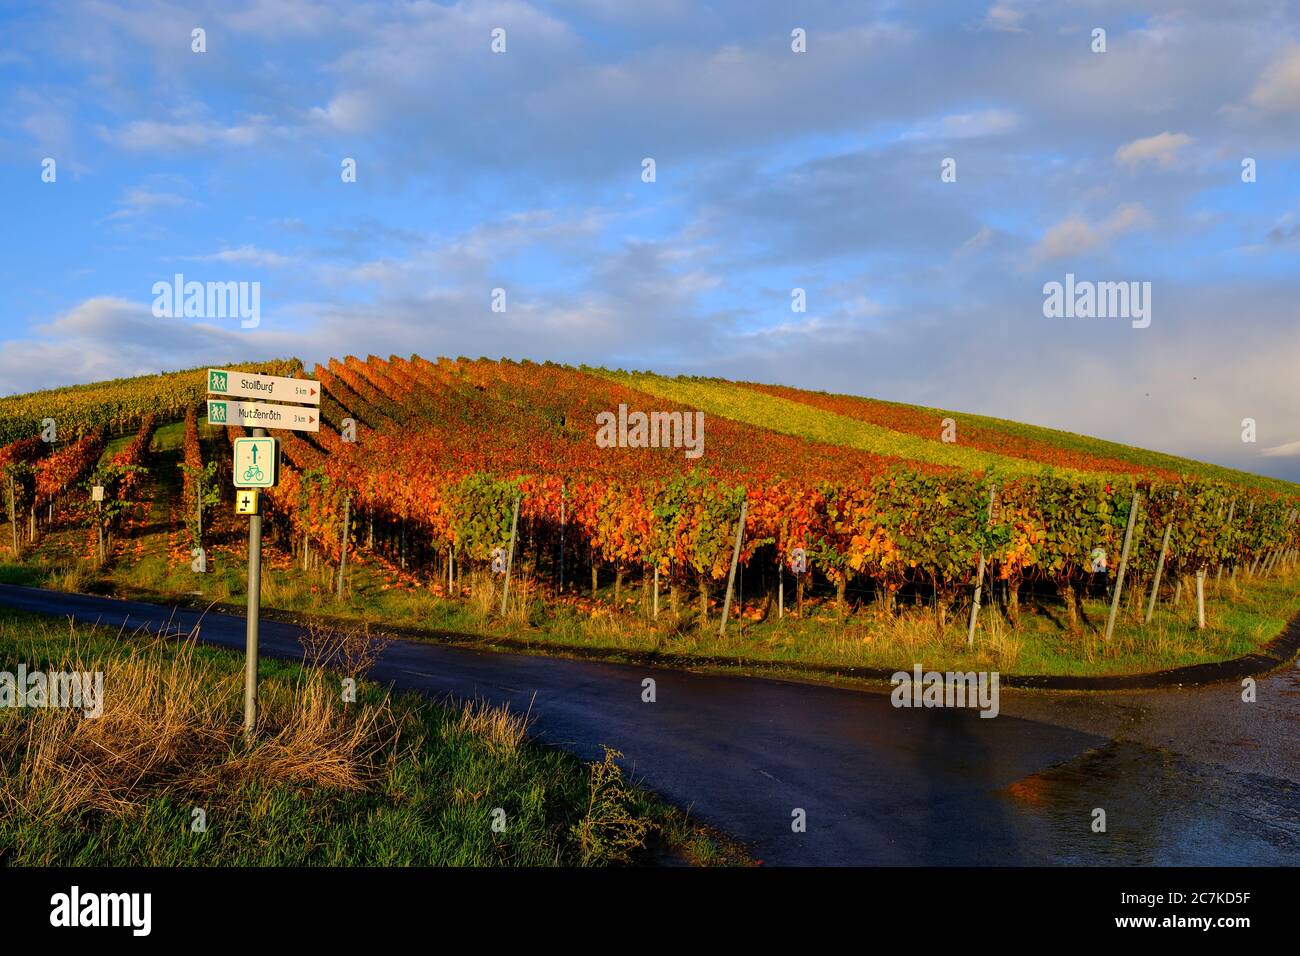 Vineyards near Wiebelsberg, Oberschwarzach municipality, Schweinfurt district, Lower Franconia, Franconia, Bavaria, Germany Stock Photo